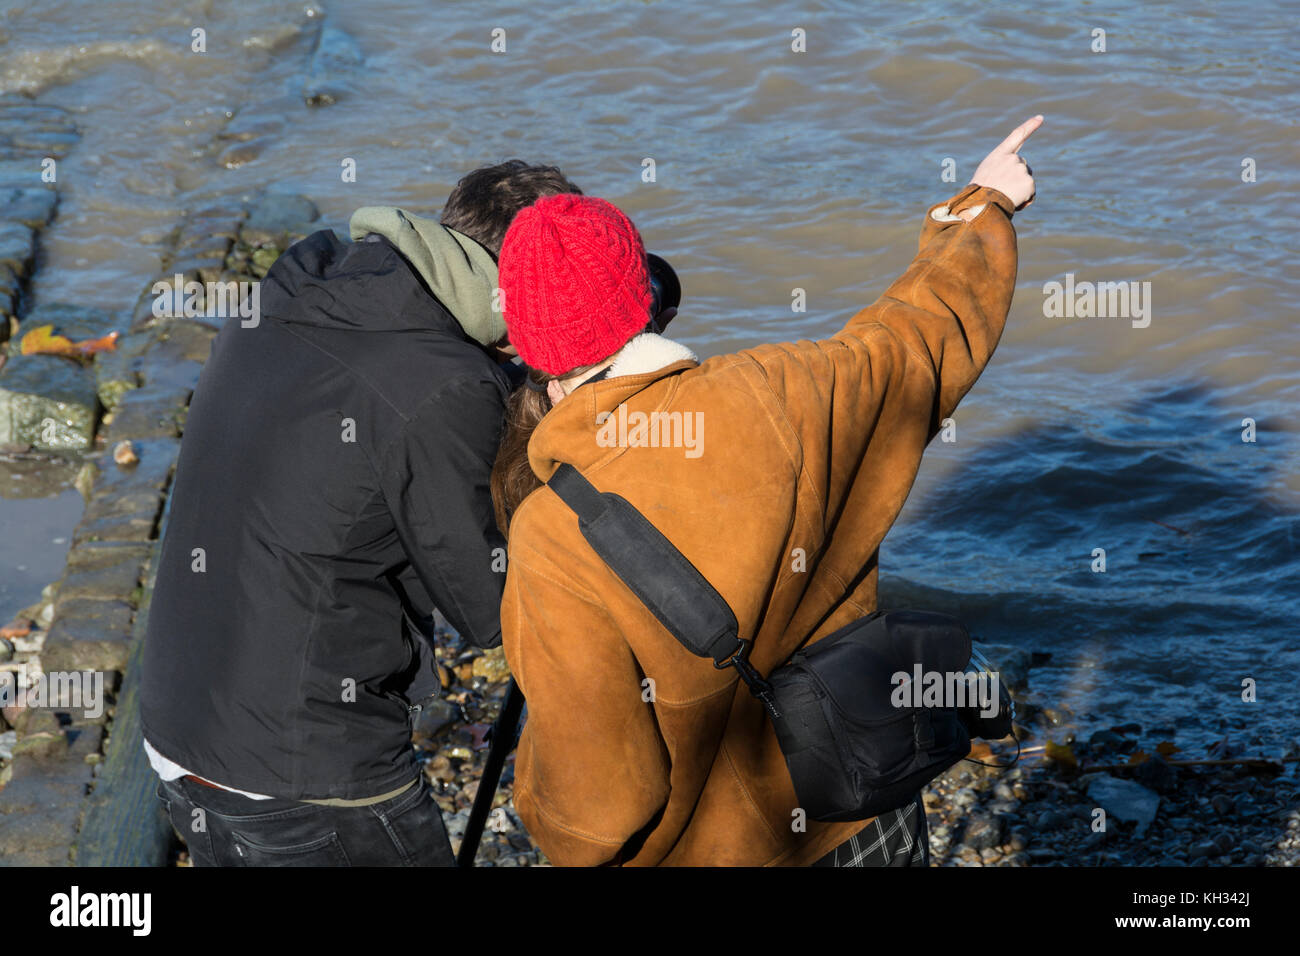 Zwei junge Fotografen in lebhaftes Gespräch auf der Themse Vorland, London, UK. Stockfoto